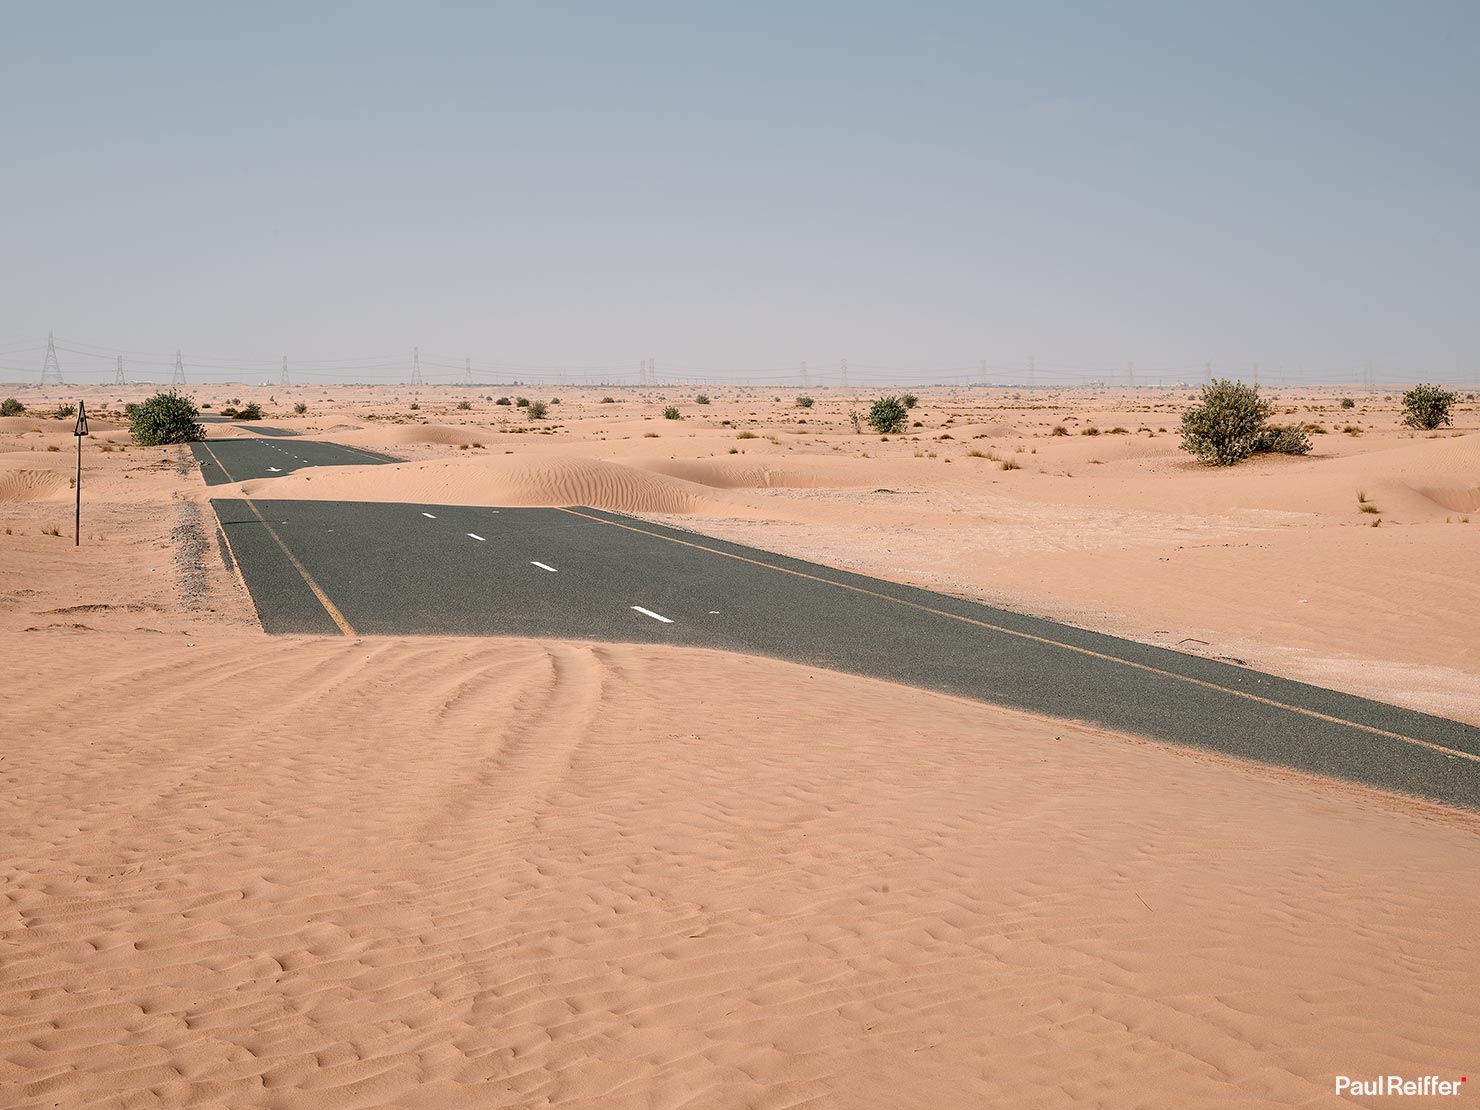 Half Desert Wide Full Landscape Images Rodenstock Phase One XT 70mm Tilt Lens Launch Testing Dubai Paul Reiffer Tethered UAE